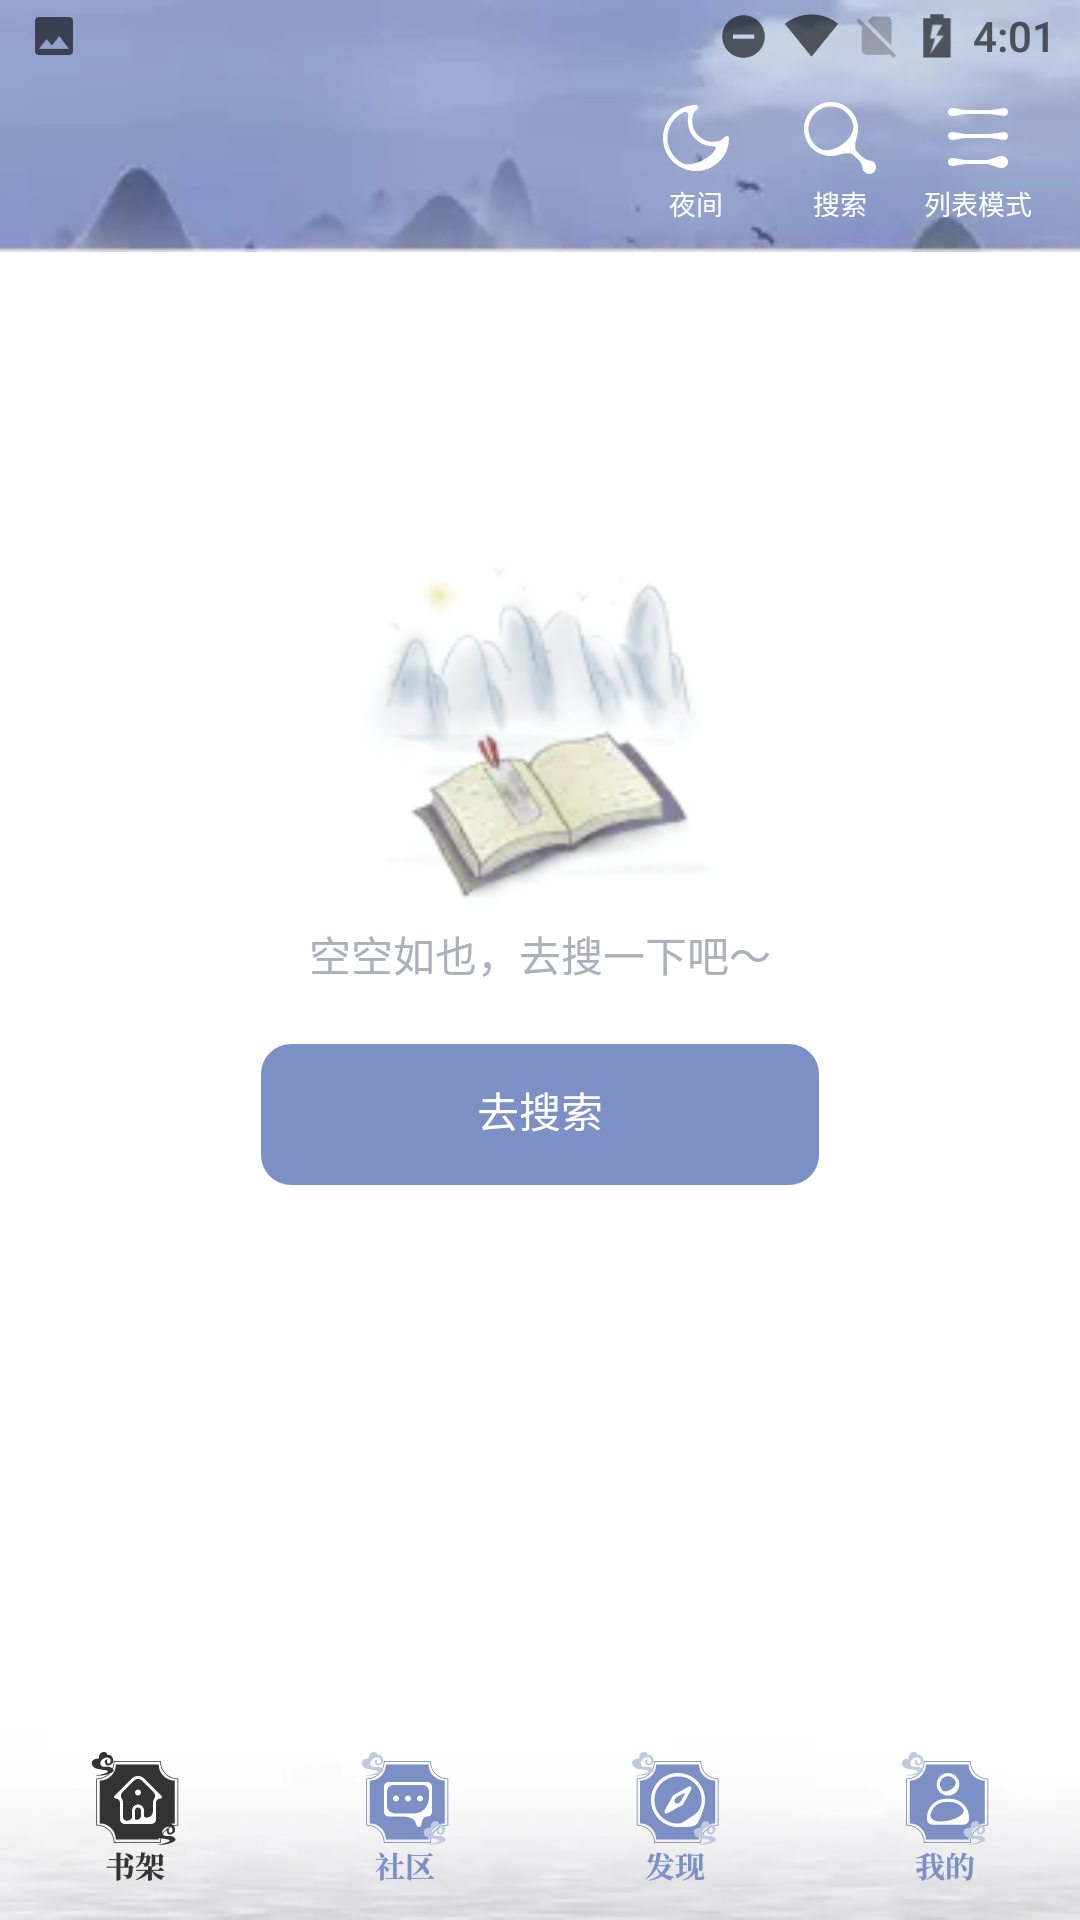 山海搜书 v1.0.4 中文学习版插图(2)